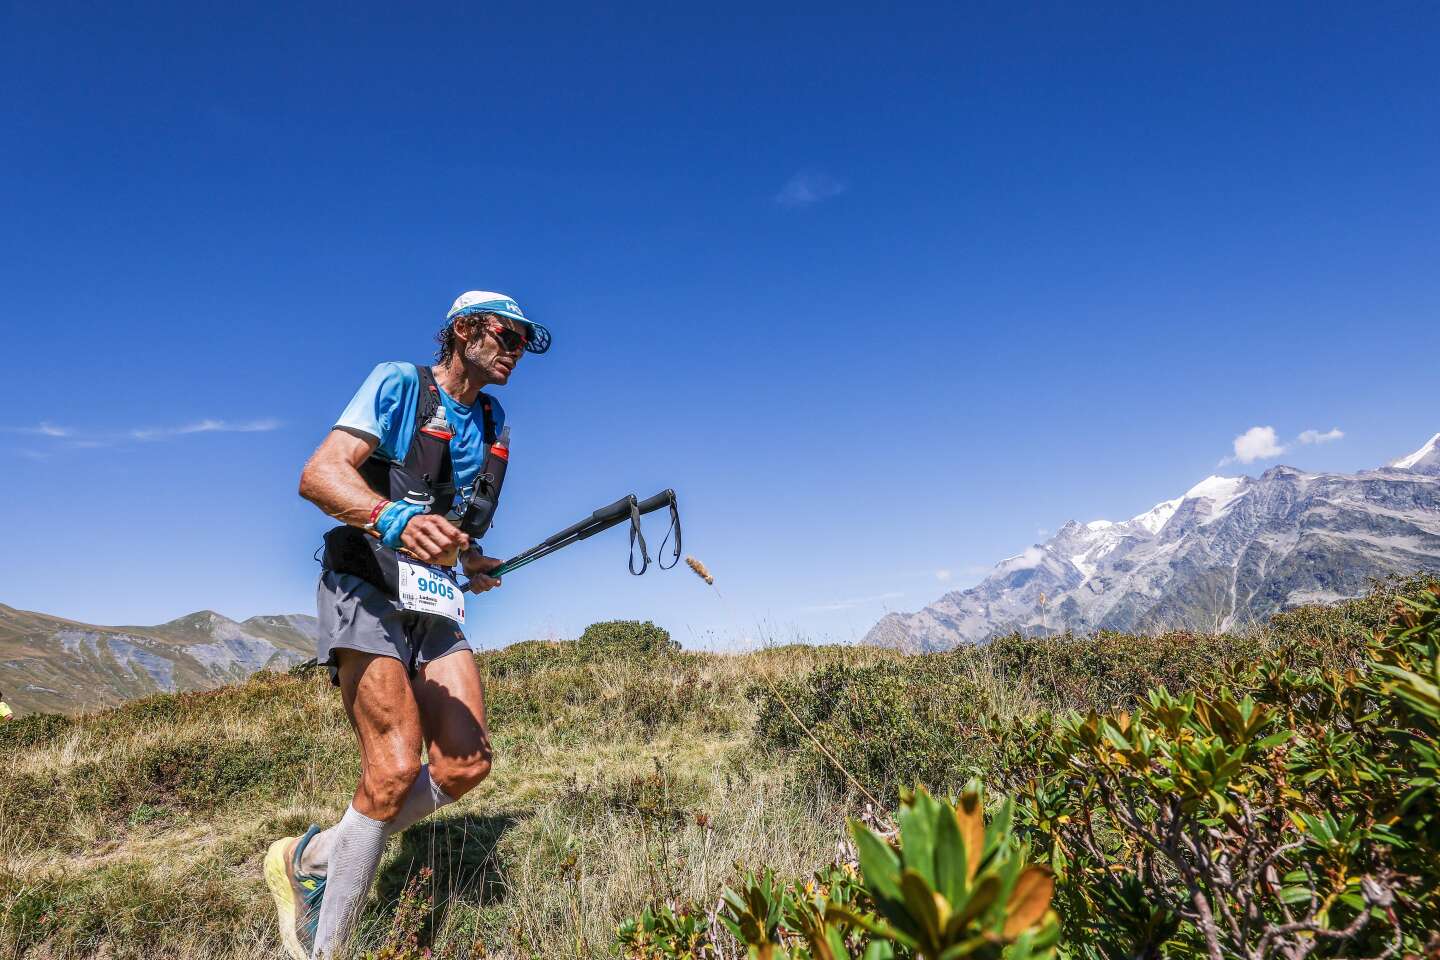 Le Français Ludovic Pommeret, 48 ans, remporte la Hardrock 100, l’un des monuments de l’ultra-trail mondial